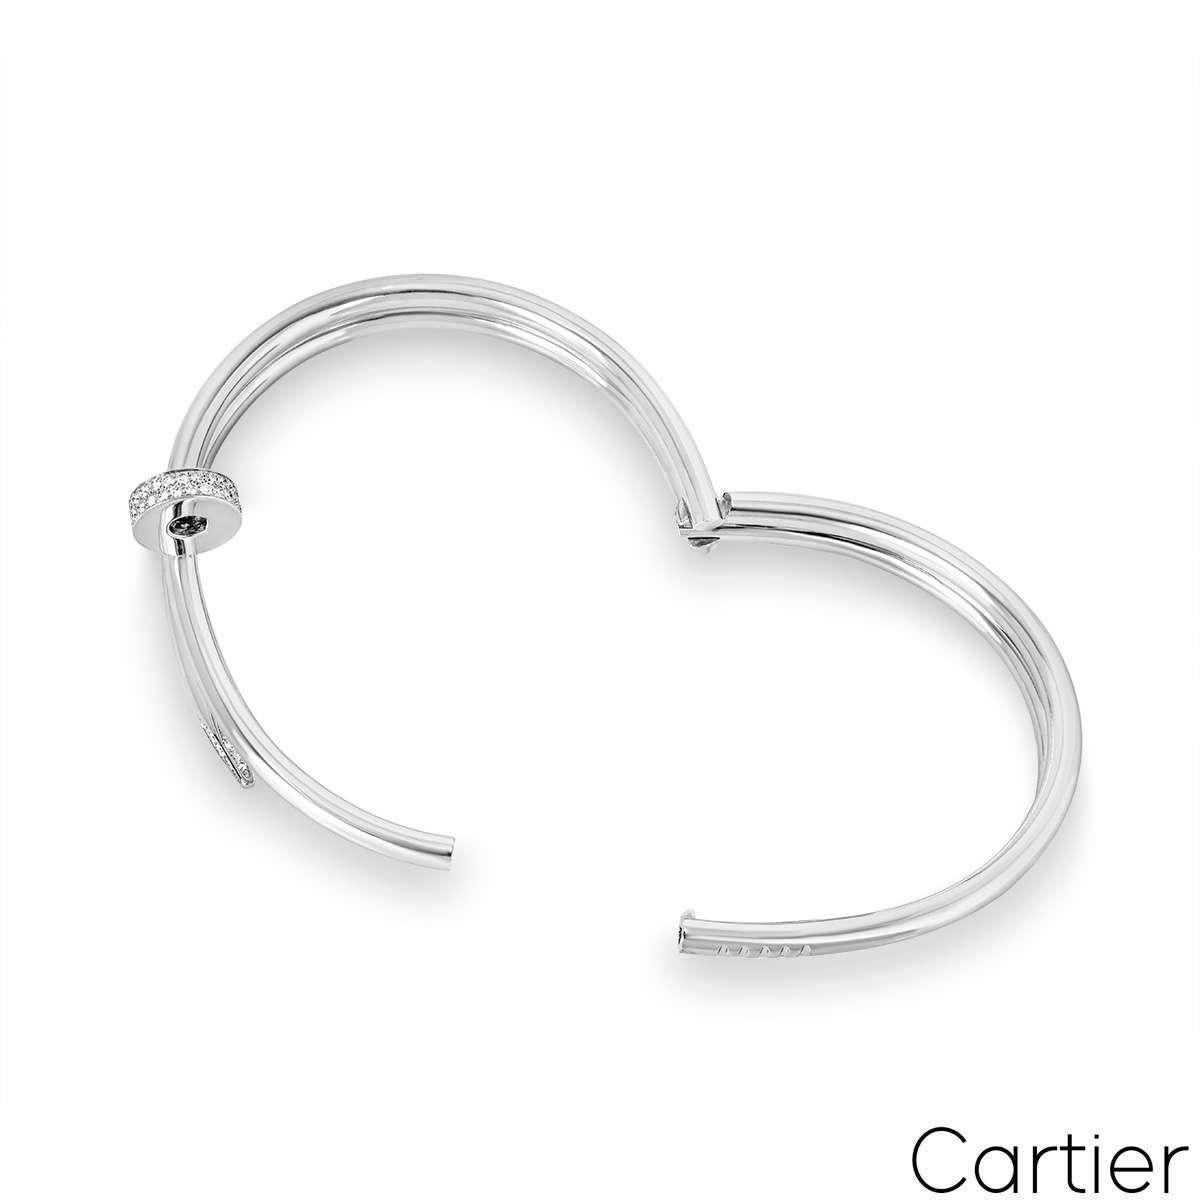 Round Cut Cartier White Gold Juste Un Clou Diamond Bracelet Size 18 N6708518